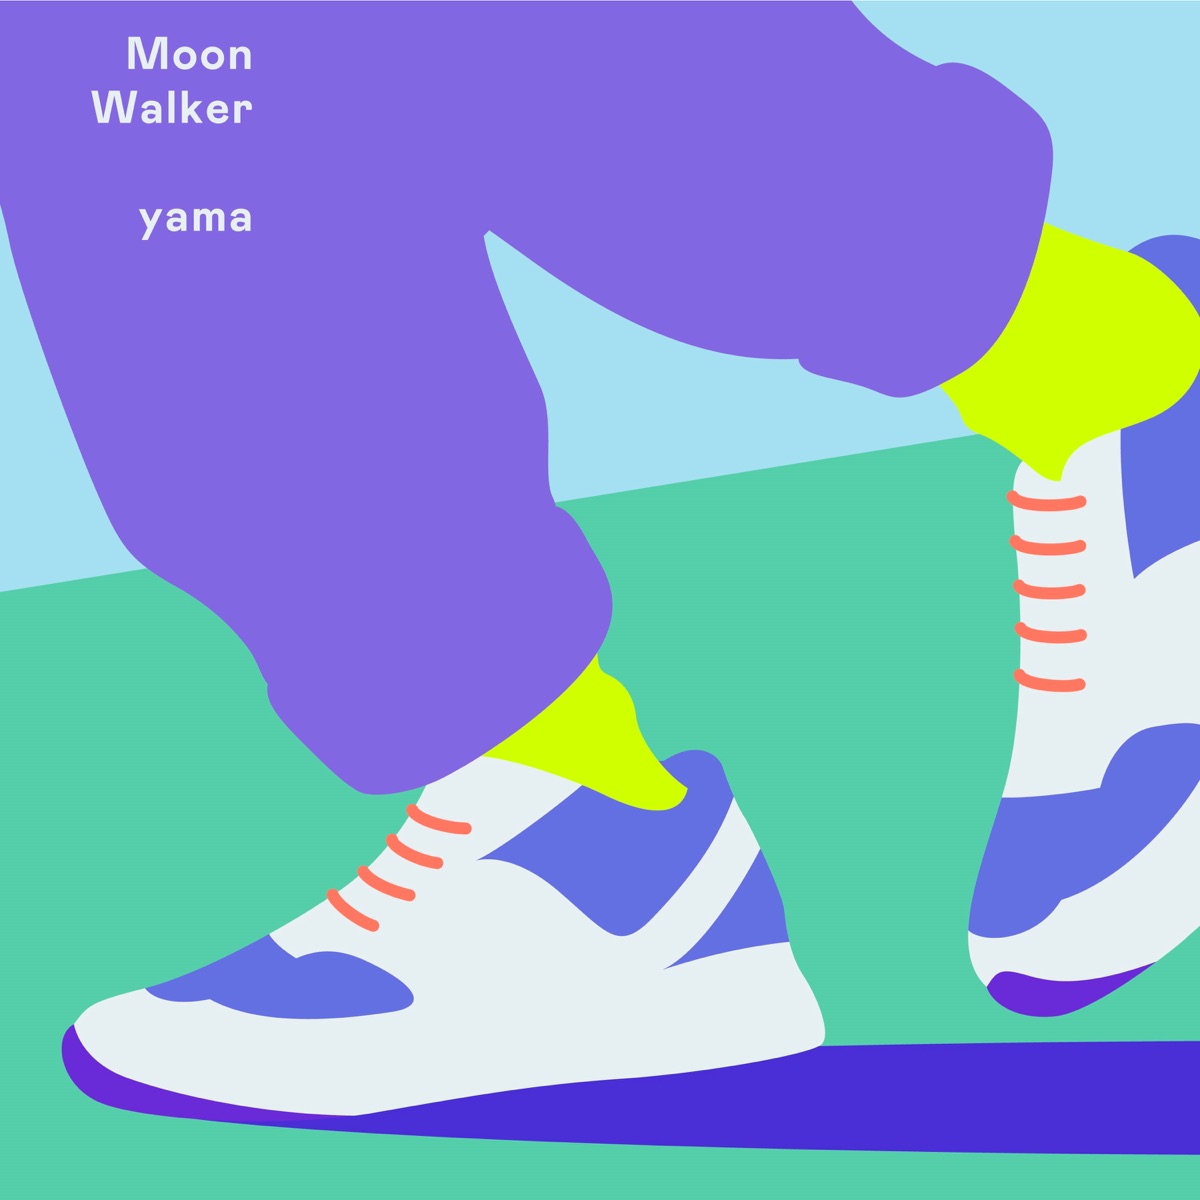 Cover art for『yama - MoonWalker』from the release『MoonWalker』